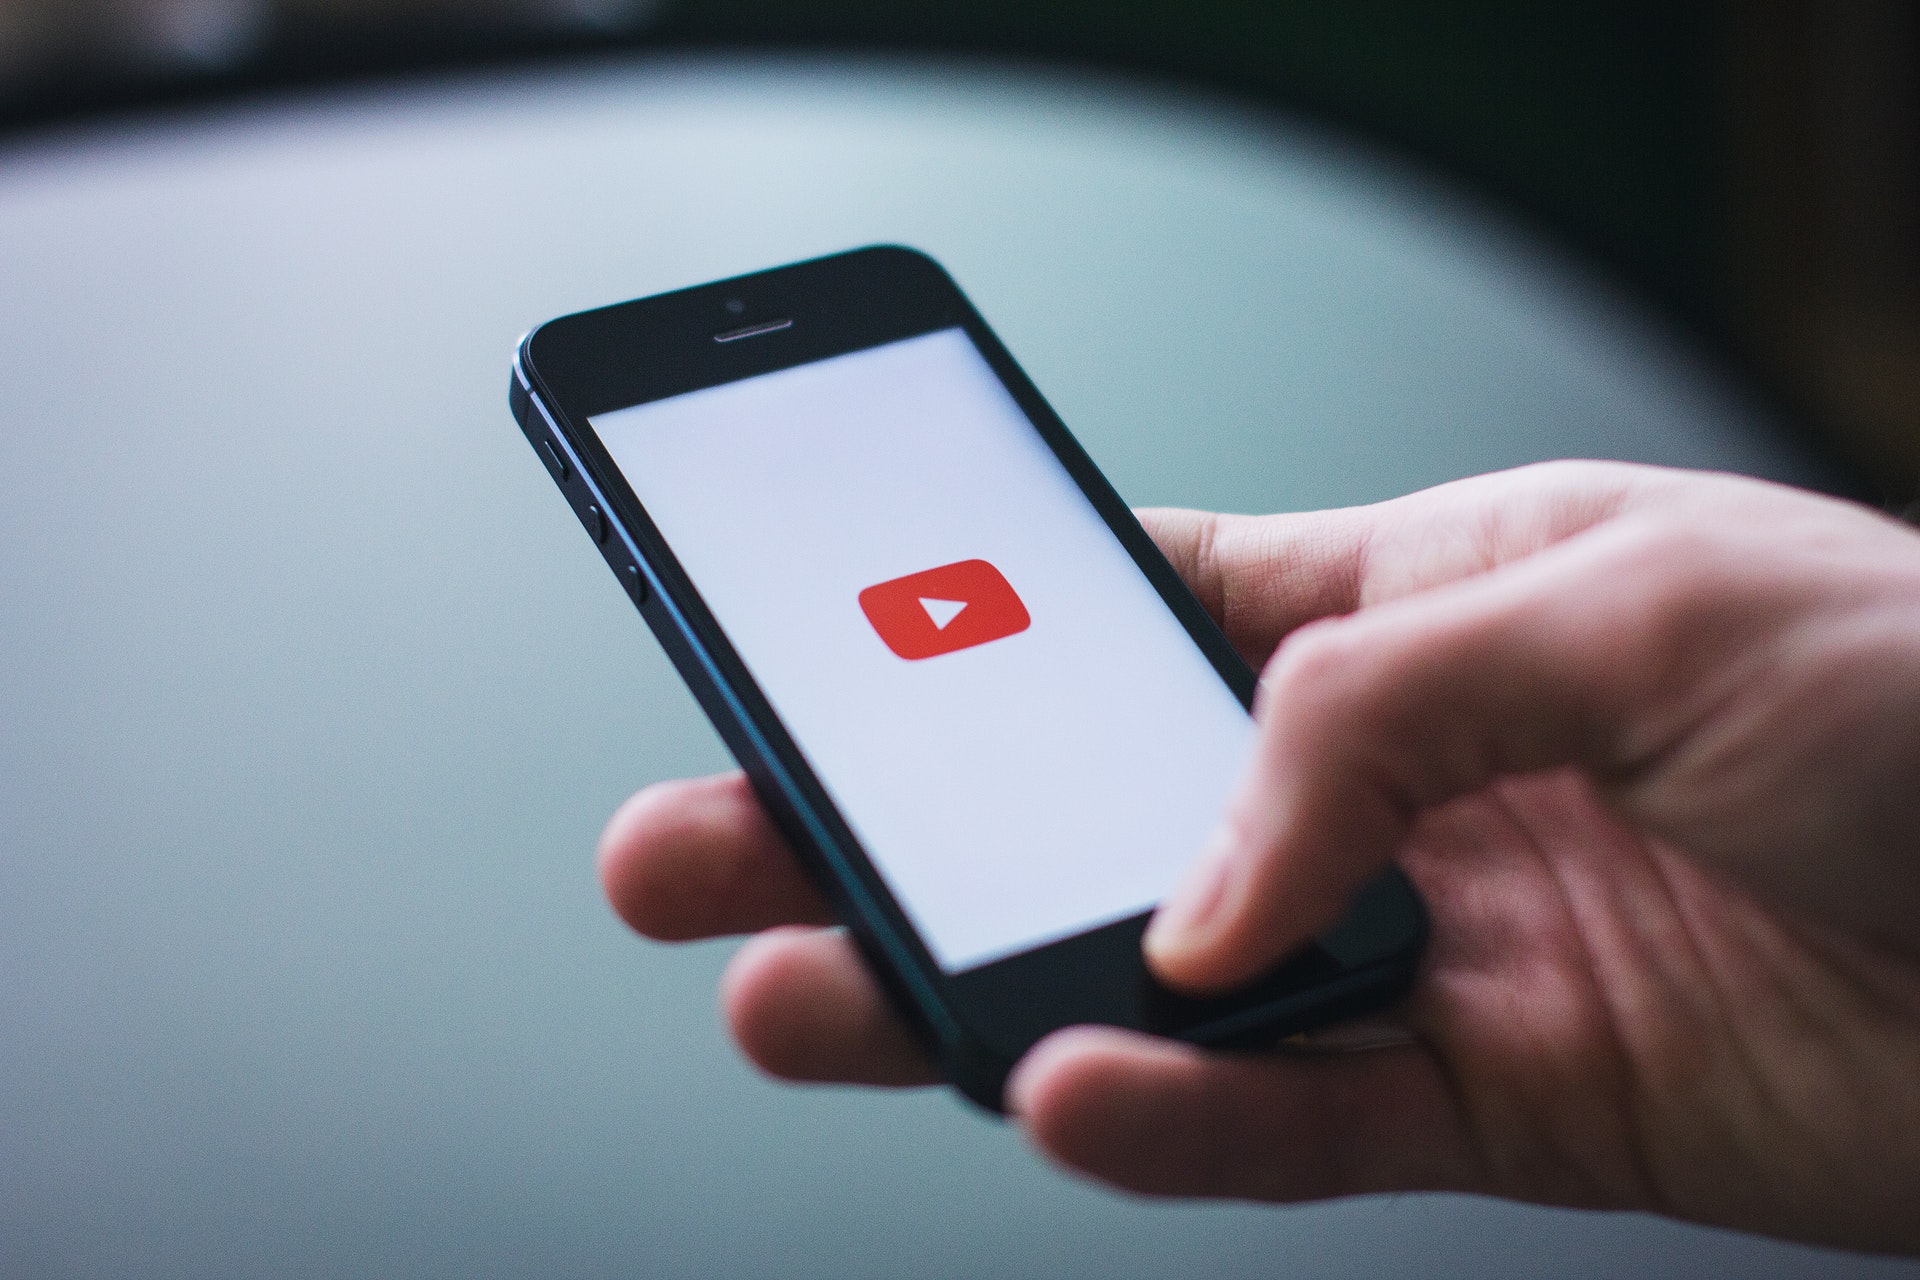 YouTube dla reklamodawców - zarządzanie bezpieczeństwem i spójnością marki SoMe YouTube dla reklamodawcow zarzadzanie bezpieczenstwem i spojnoscia marki